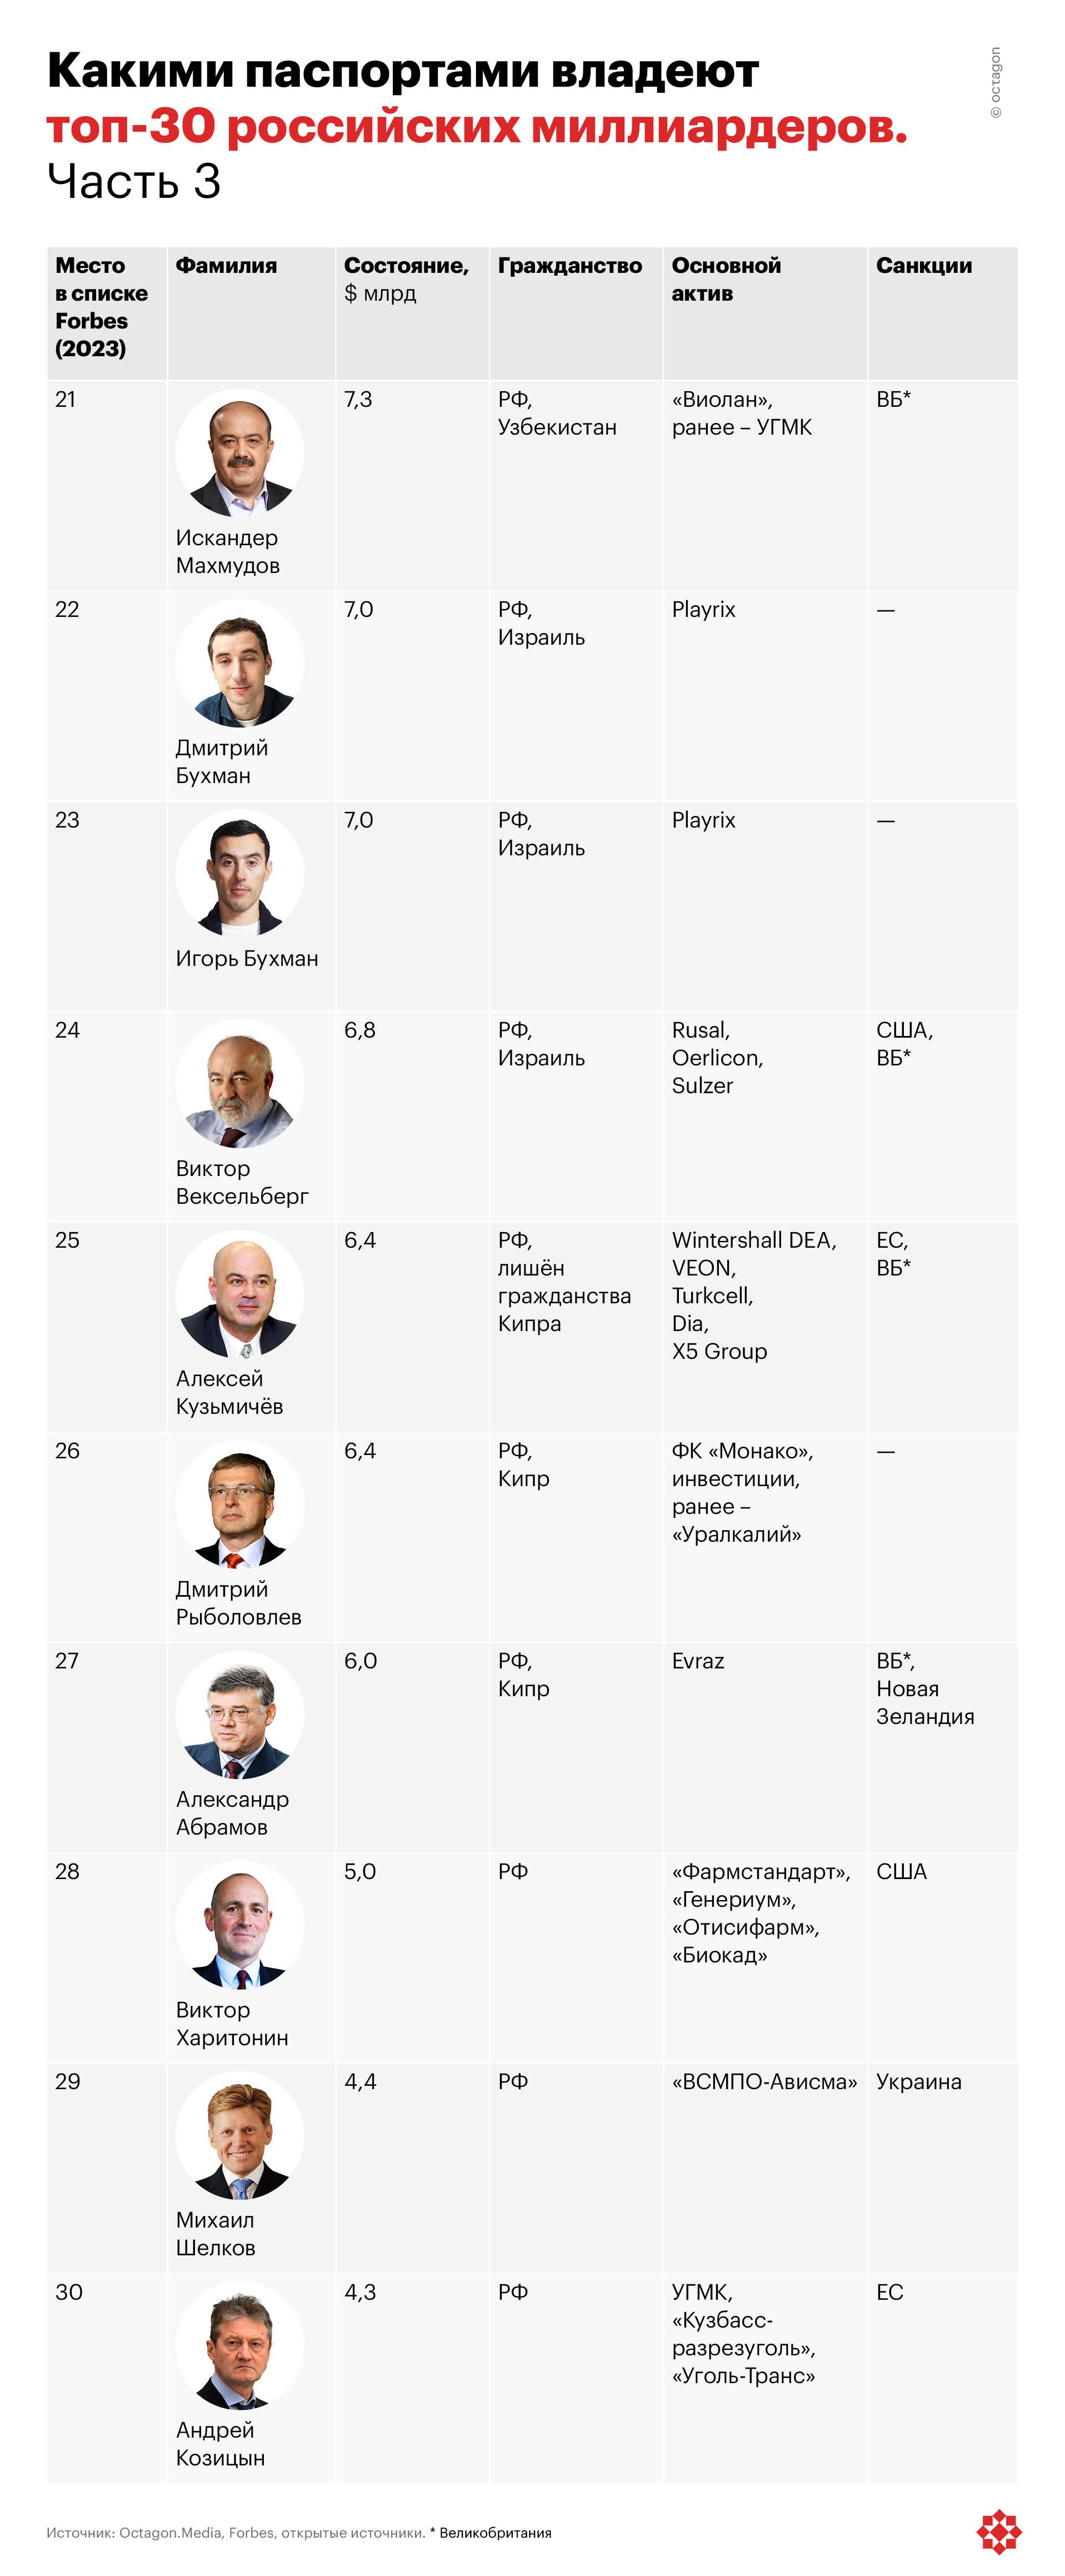 Какими паспортами владеют топ-30 российских миллиардеров. Часть 3.